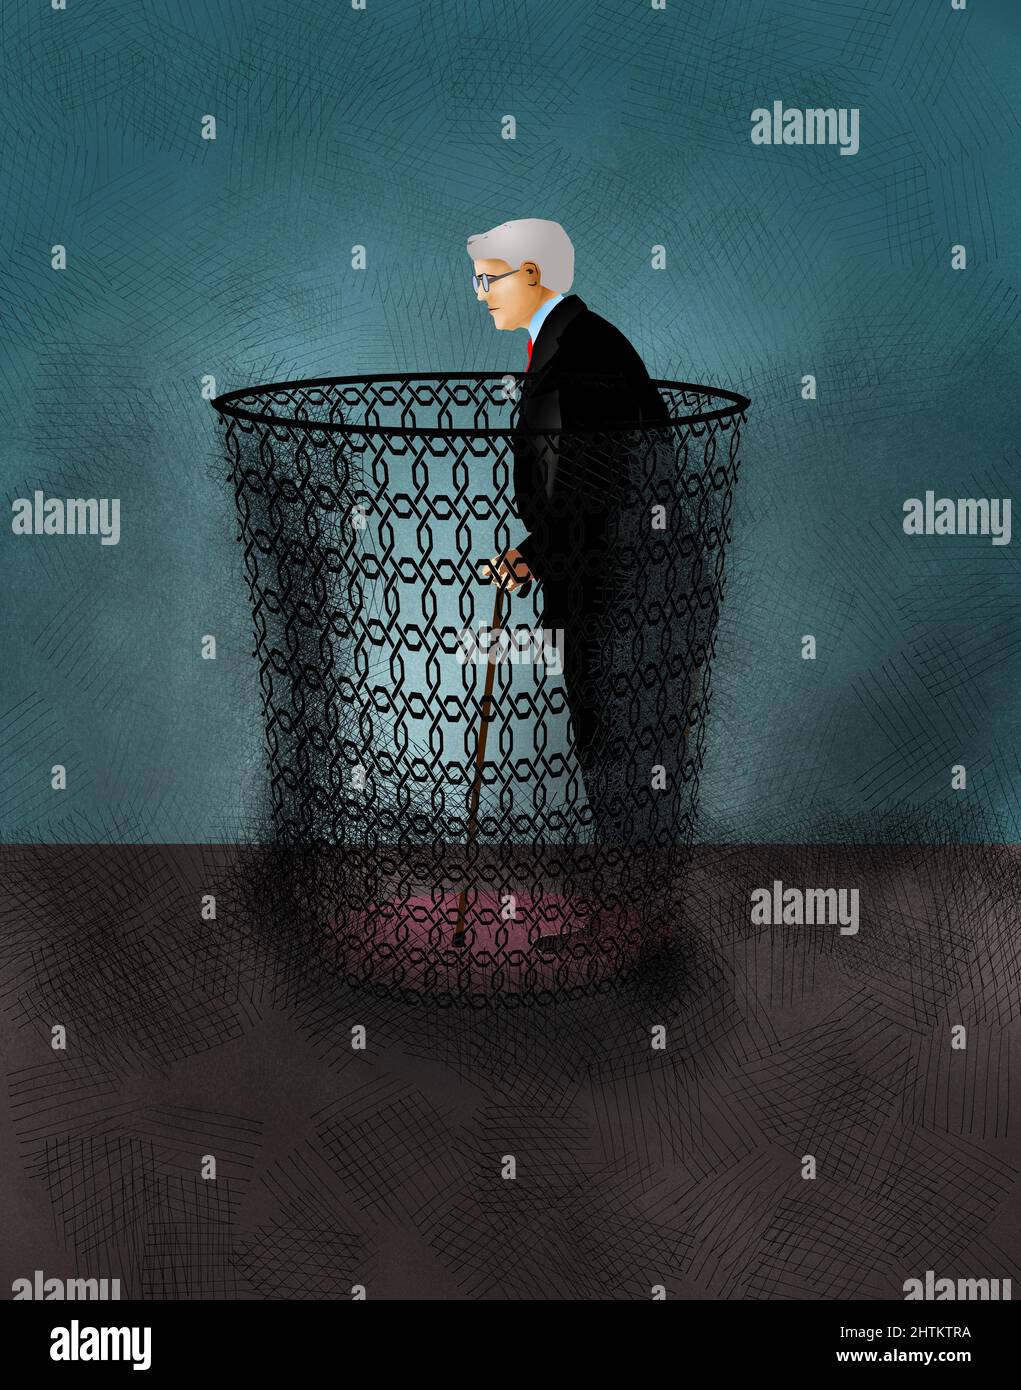 Ein älterer Mann mit grauem Haar und einem Stock ist in einem Abfallkorb in dieser 3-D-Illustration über einen Mangel an Respekt für ältere Arbeitnehmer zu sehen. Stockfoto